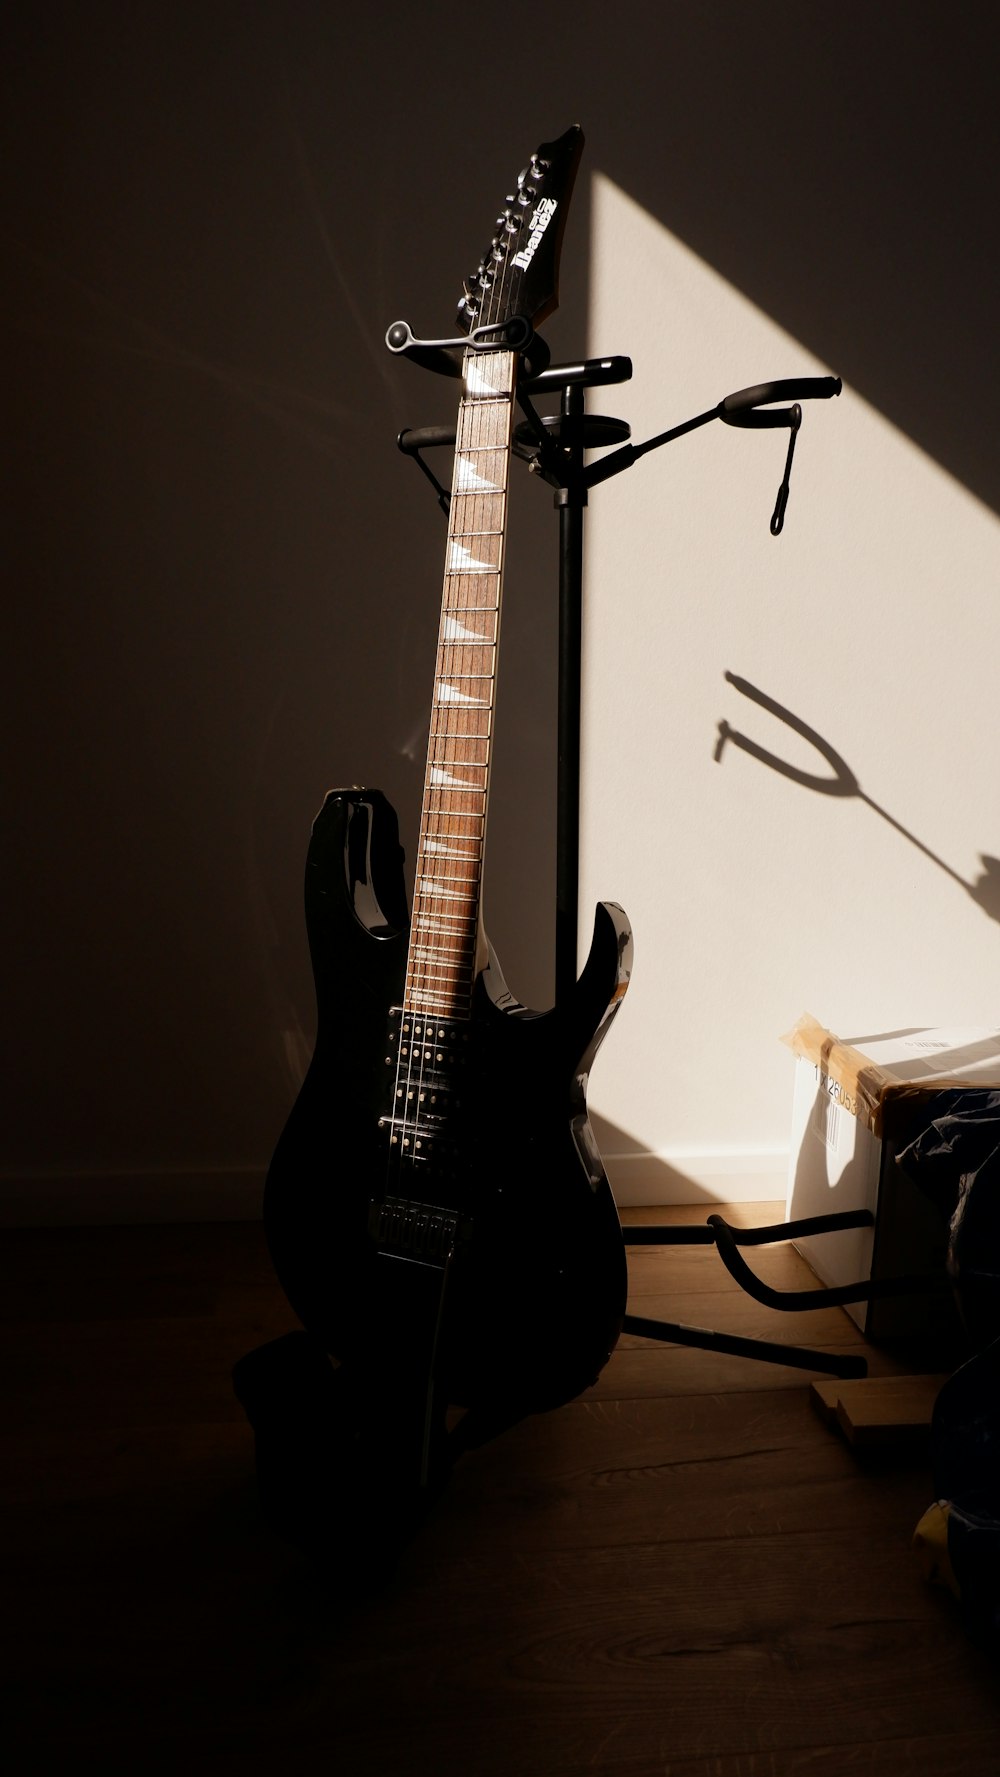 Une guitare est assise à côté d’un support de guitare